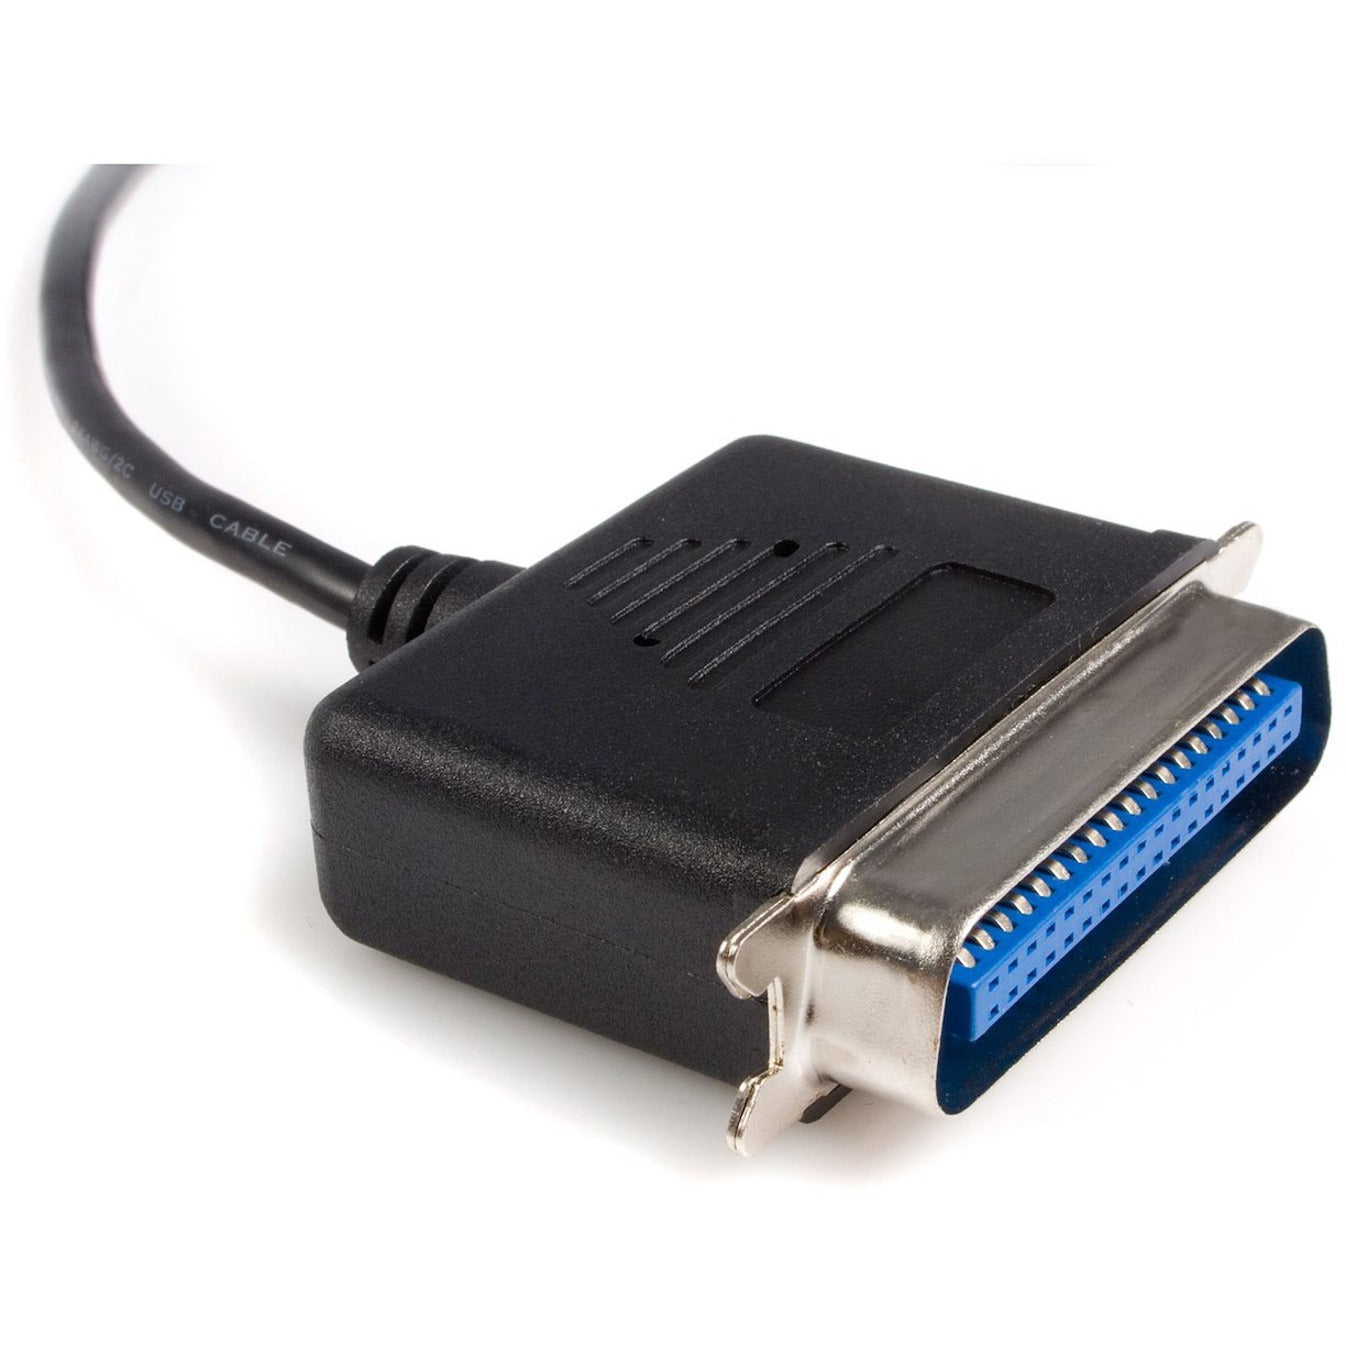 ستارتك.كوم ICUSB1284 محول الطابعة الموازية - USB - 6 قدم ، قابس وتشغيل